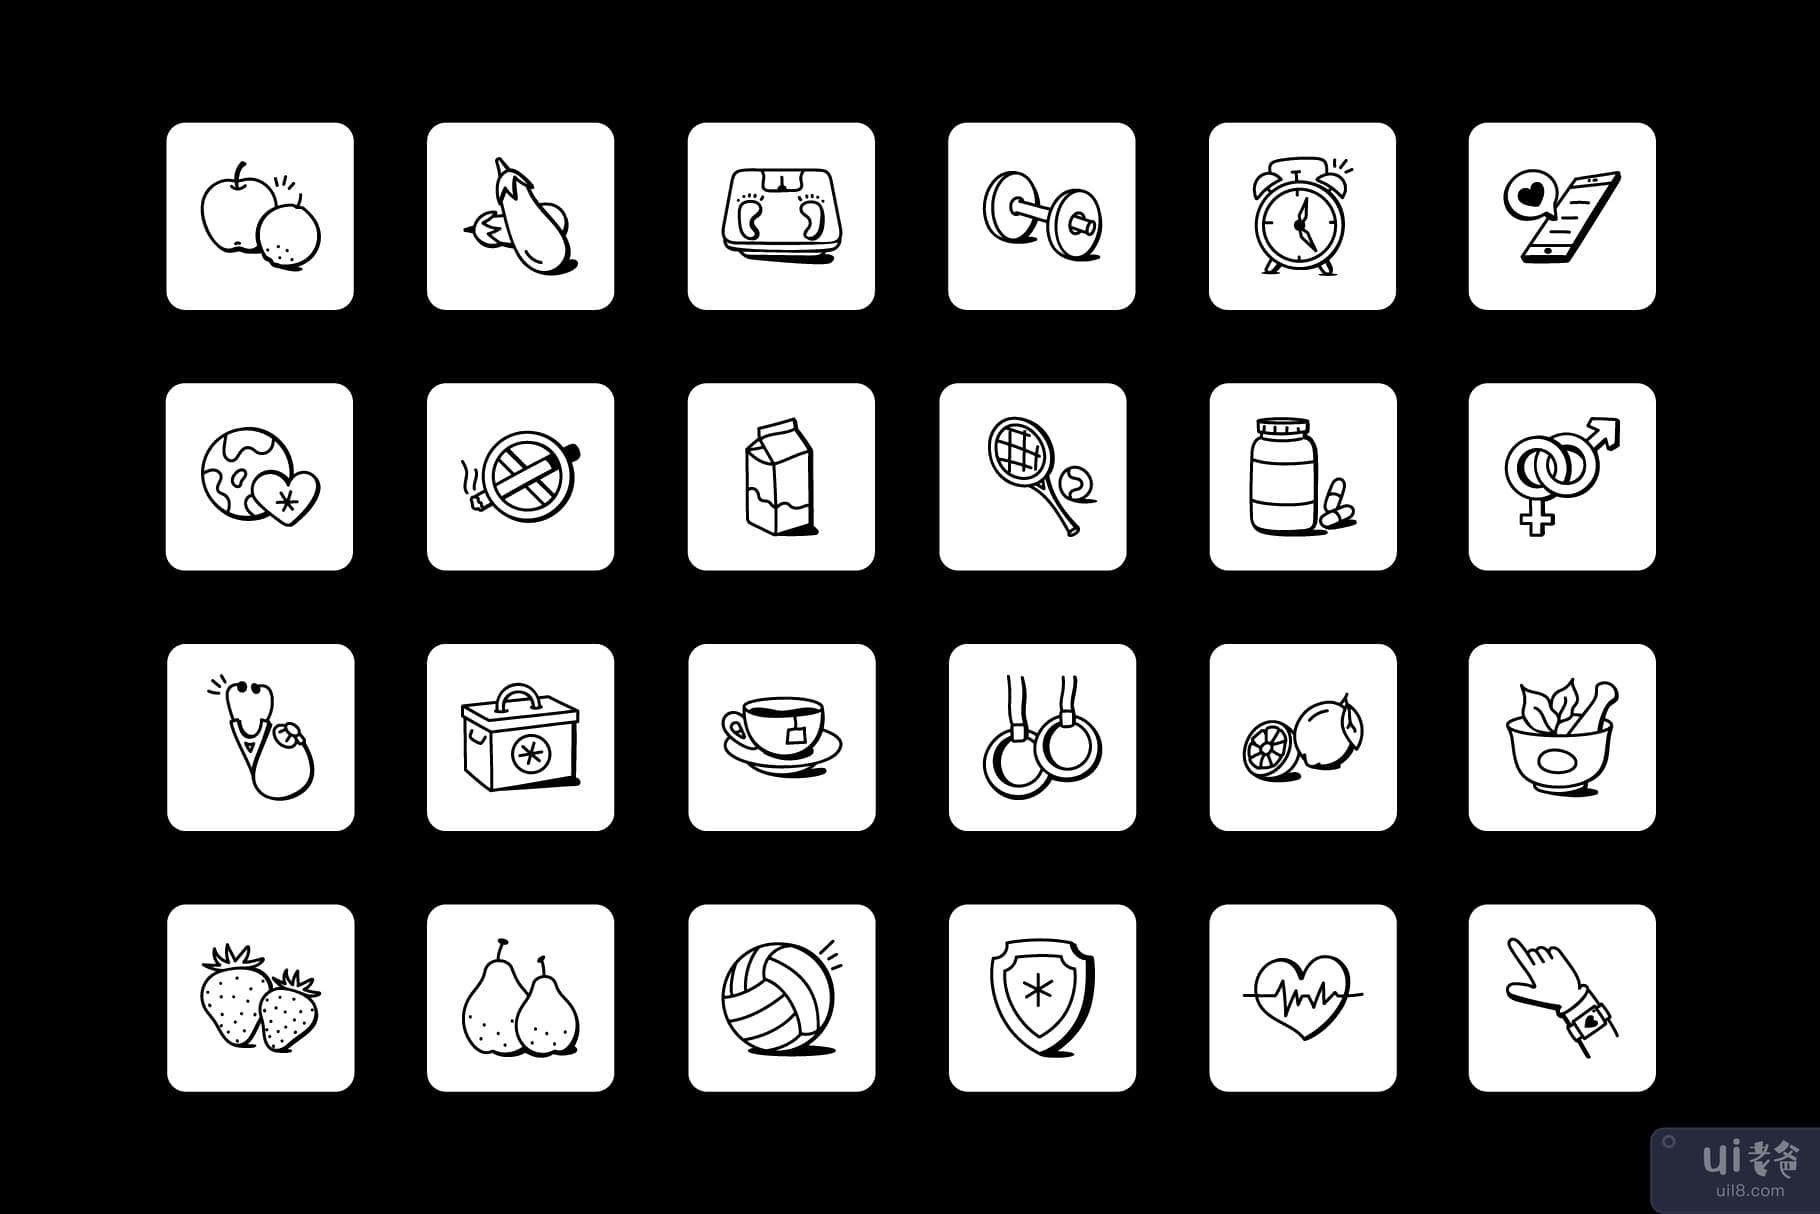 50 涂鸦世界卫生日矢量图标(50 Doodle World Health Day Vector Icons)插图6